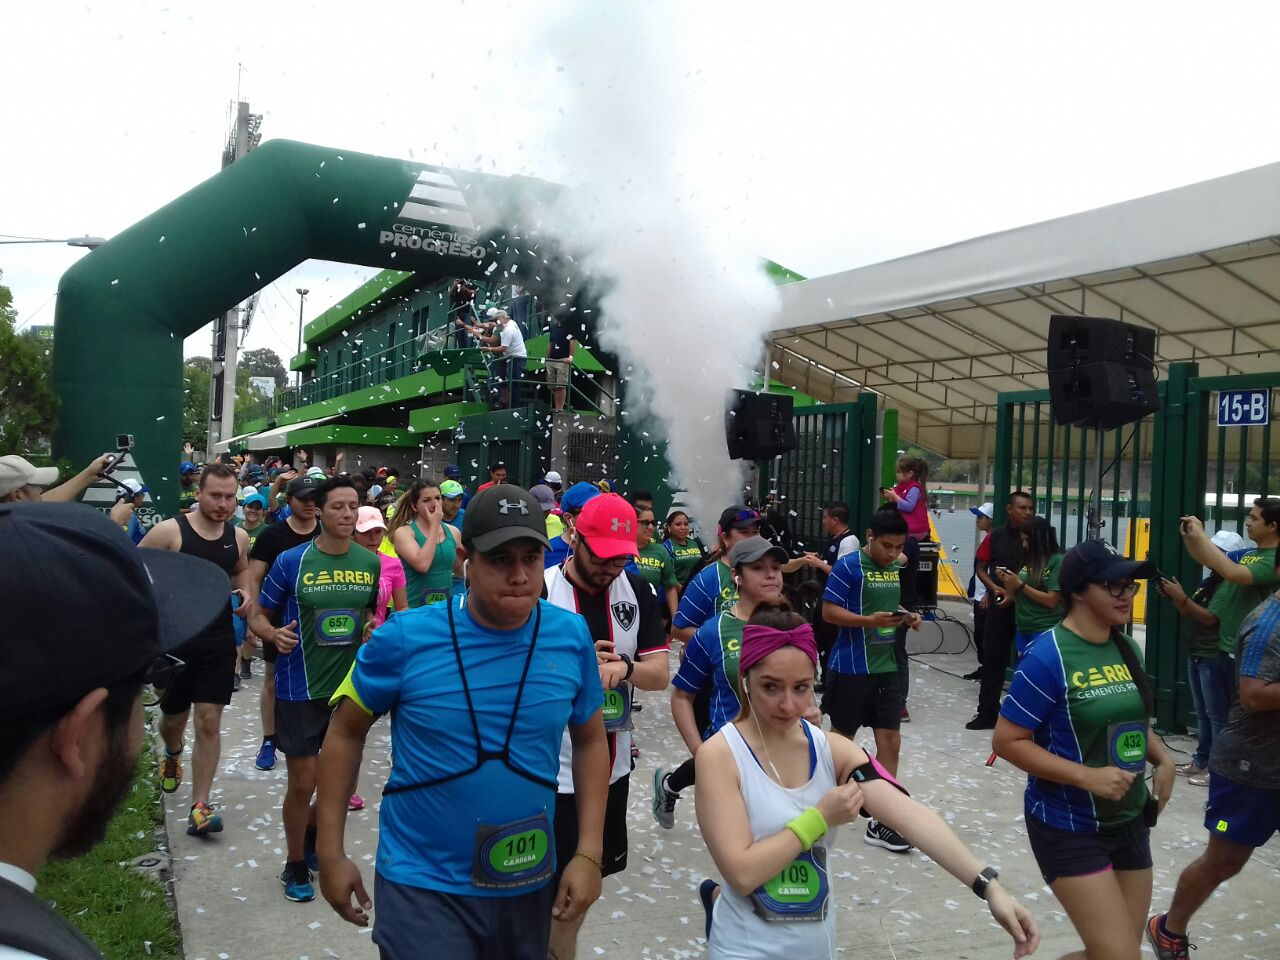 Corredores salen del Estadio Cementos Progreso en la primera edición de la carrera. (Foto Prensa Libre: Cortesía).

